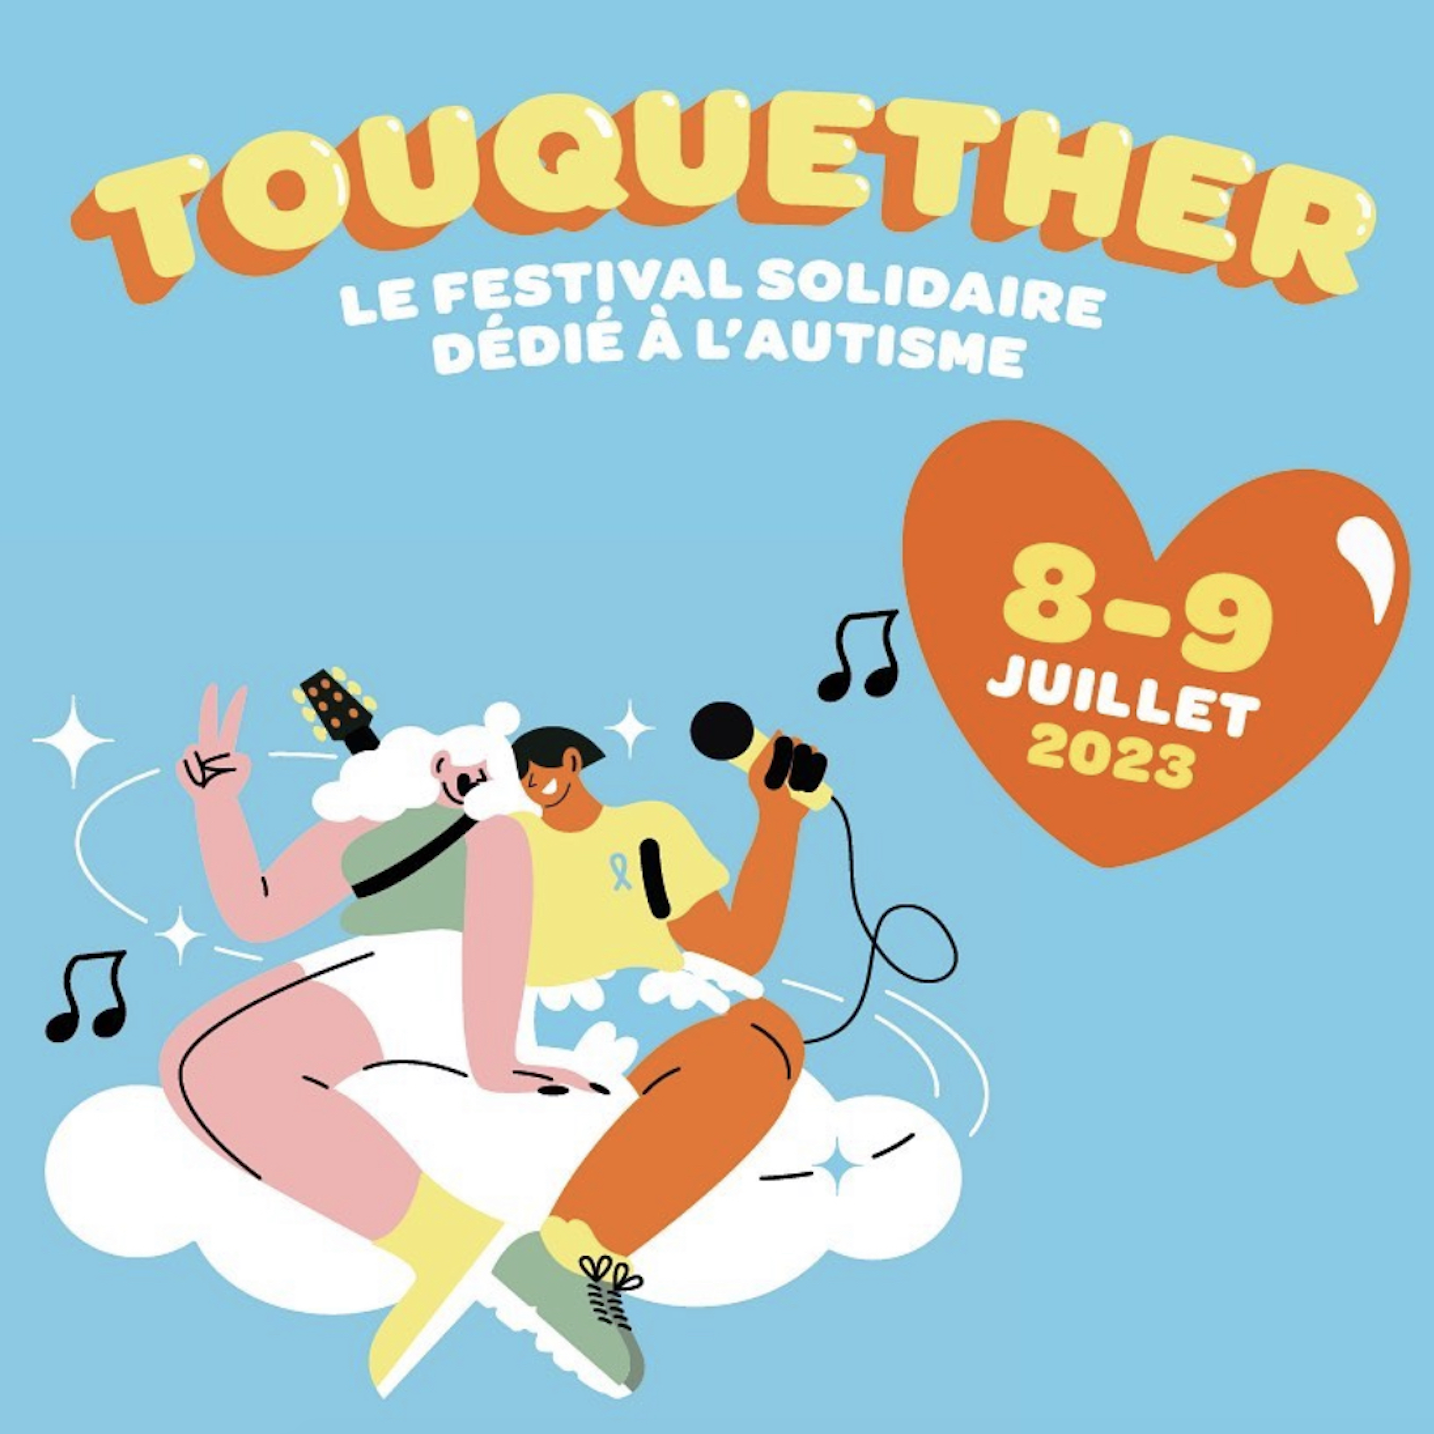 Touquether - Festival solidaire dédié à l'autisme (8 et 9 juillet)